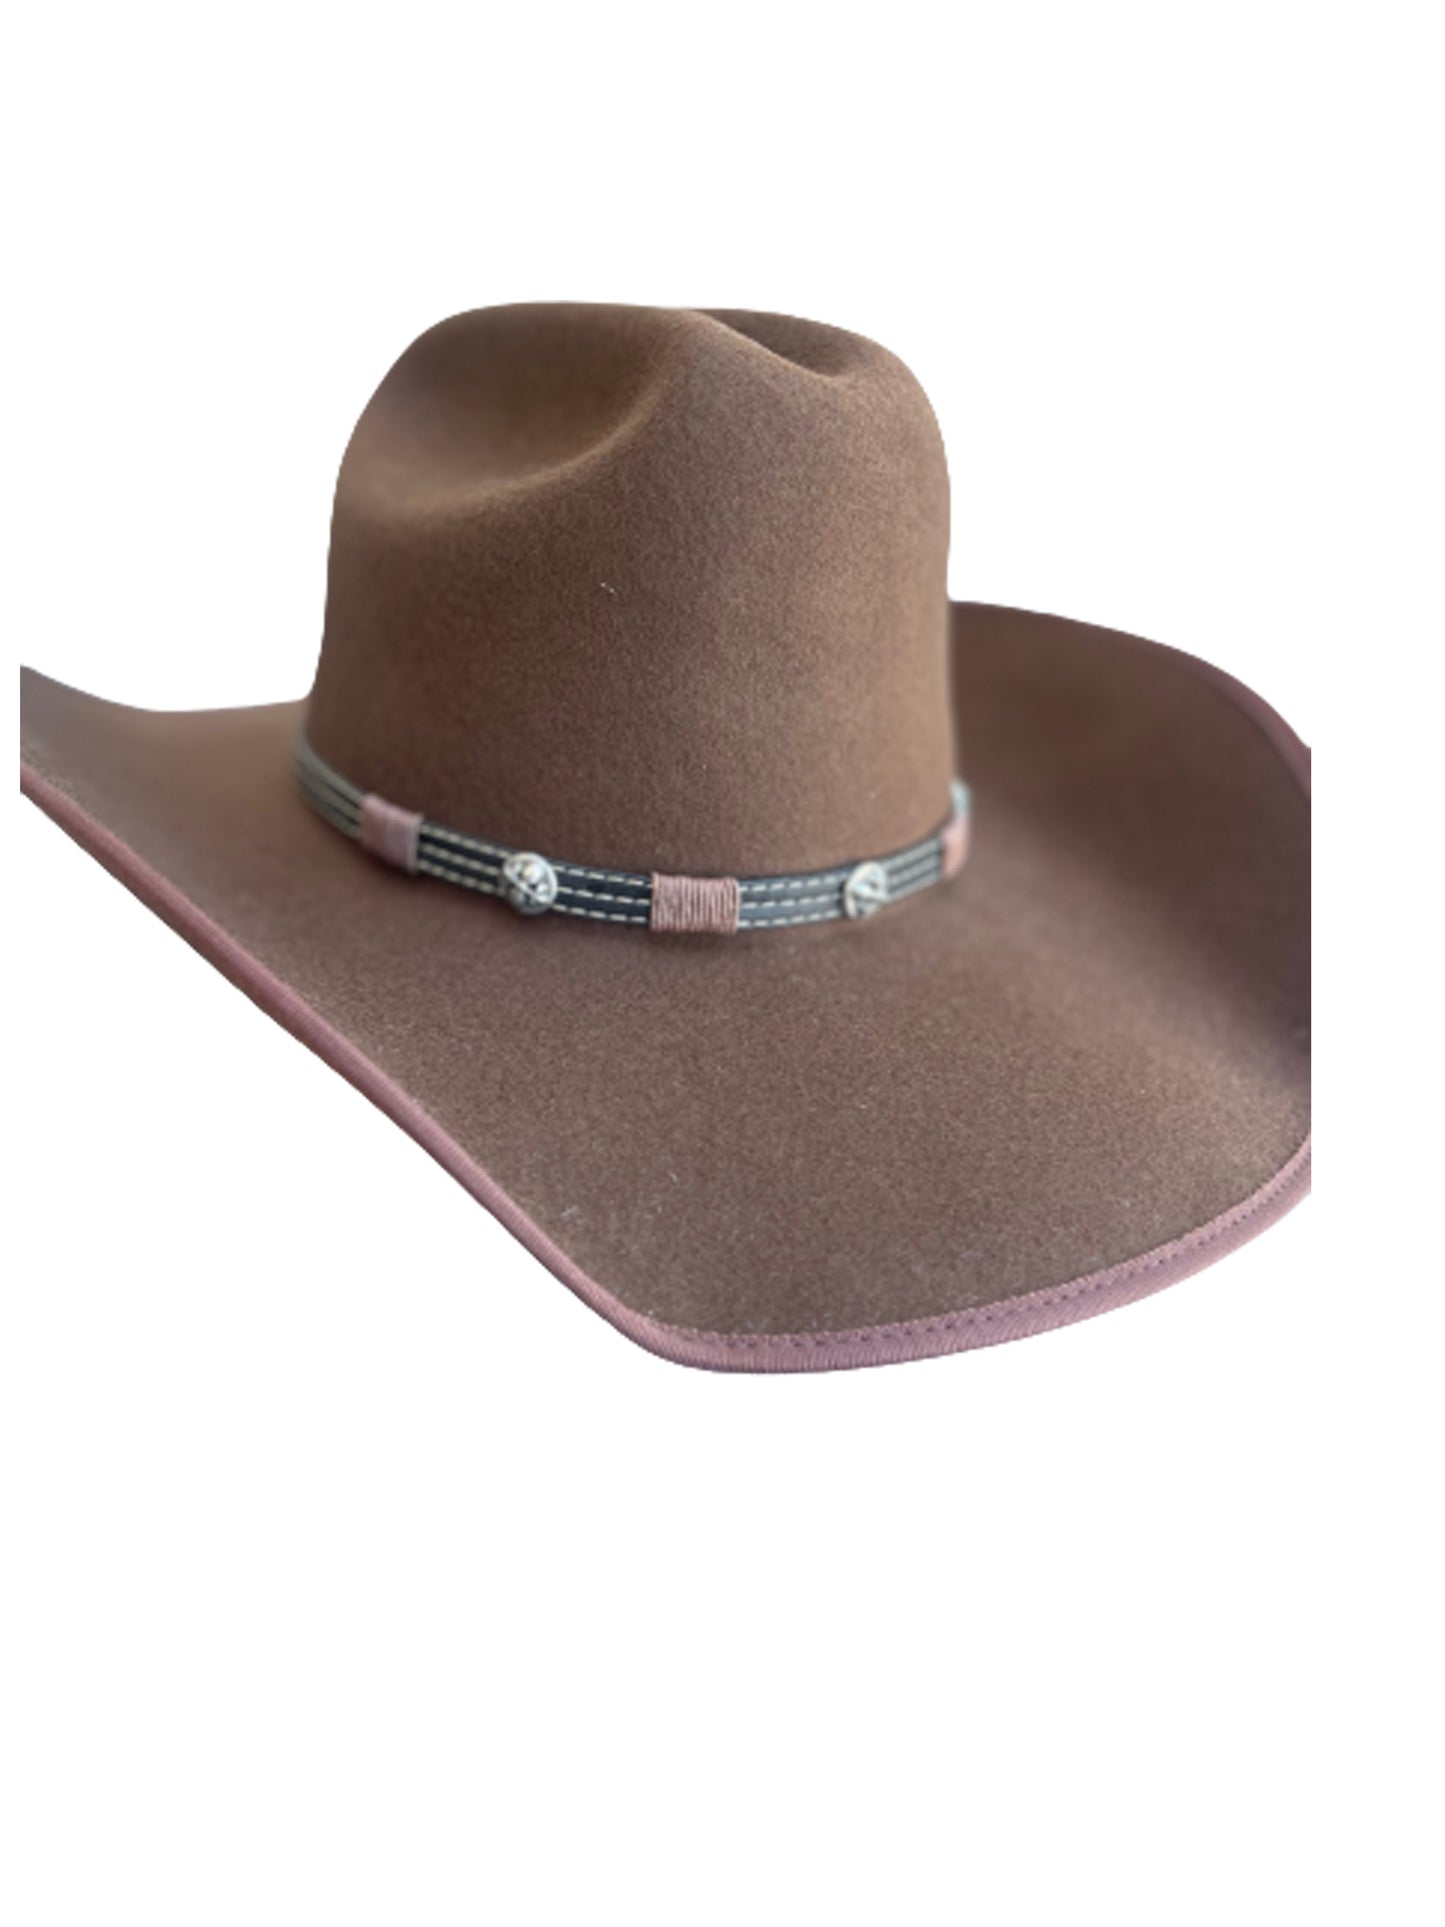 wool cowboy hat brown